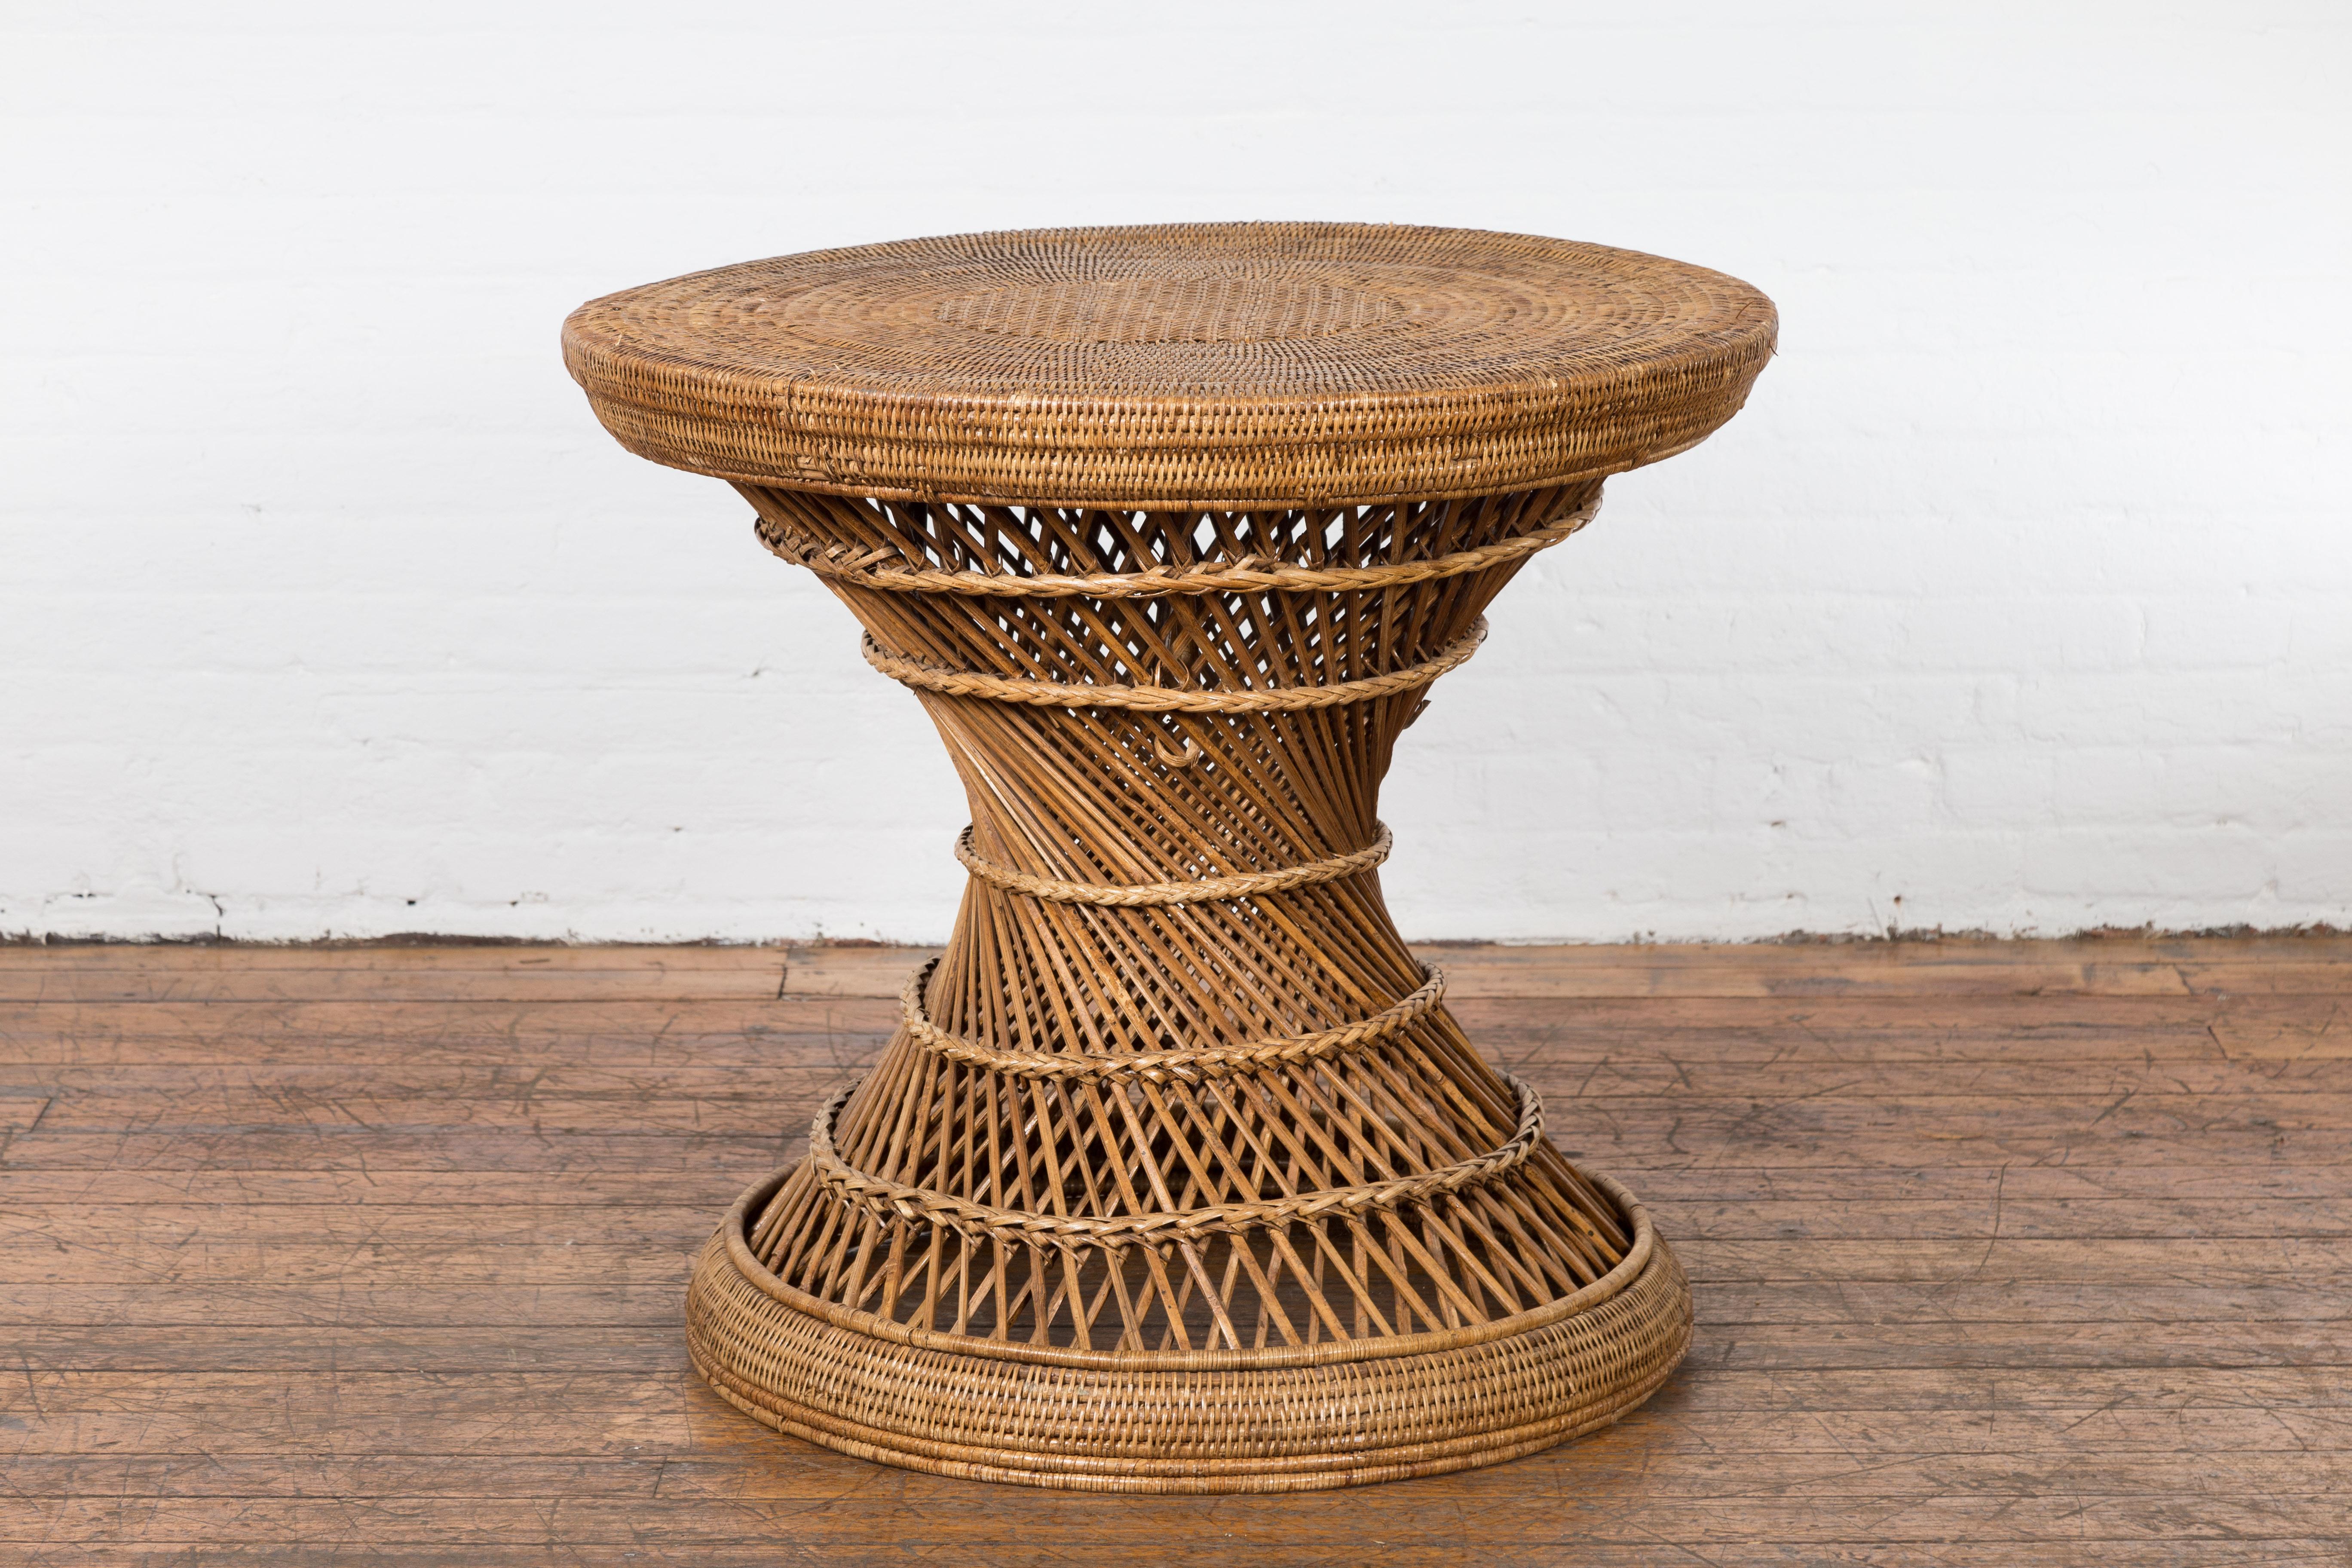 Table à tambour thaïlandaise de style rustique datant du milieu du 20e siècle, fabriquée en rotin tressé avec un plateau circulaire, une forme de sablier et un centre torsadé. Évoquant la chaleur et le charme de l'artisanat thaïlandais du milieu du